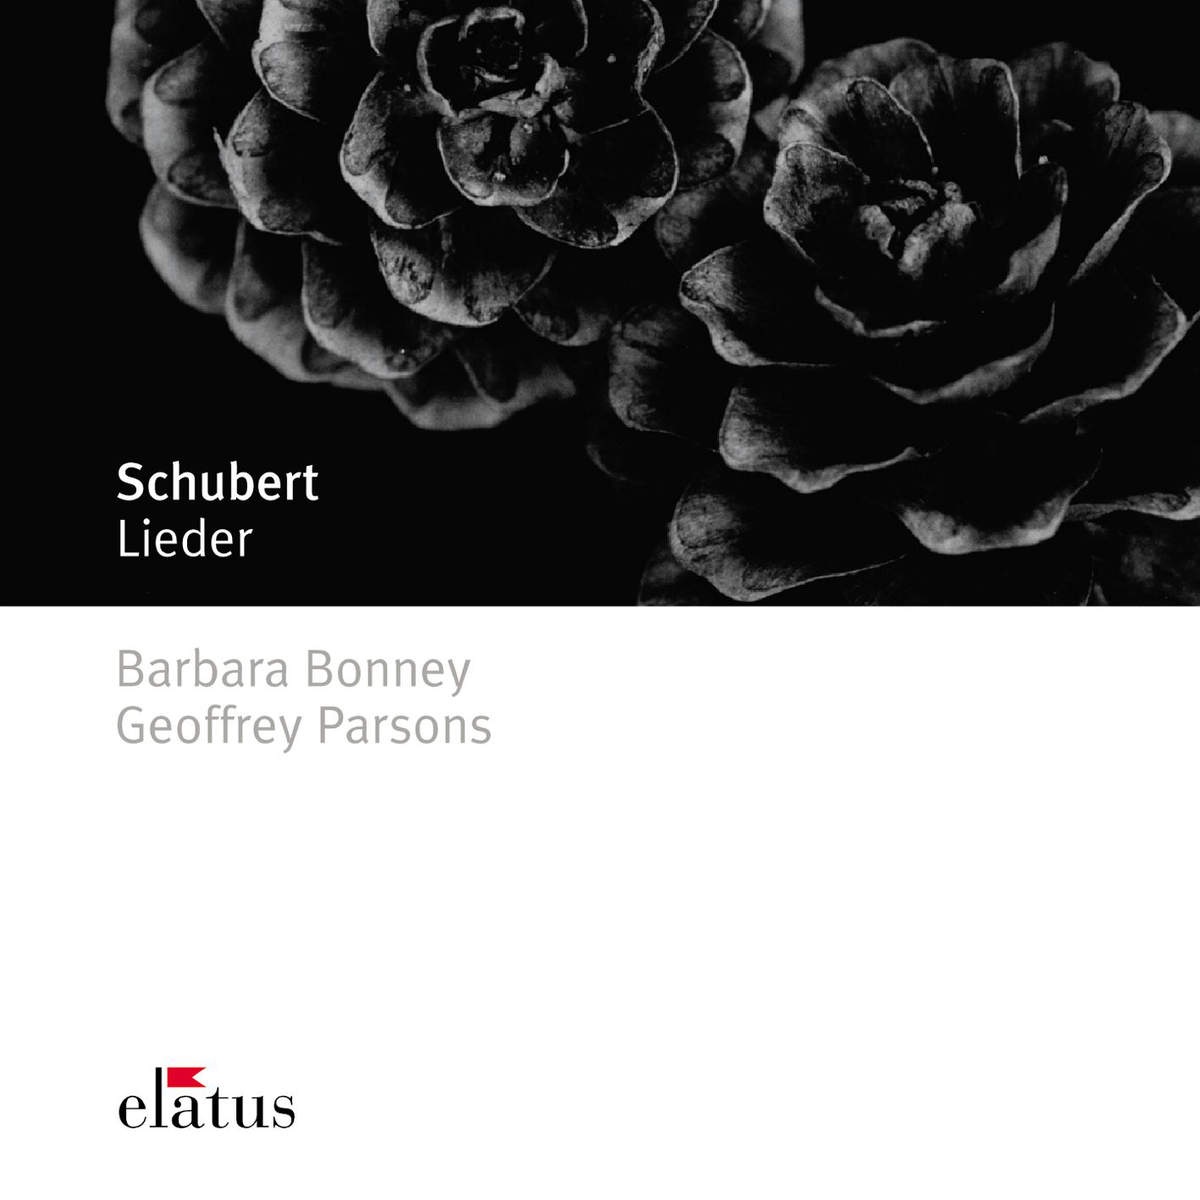 Schubert : Liebhaber in allen Gestalten D558